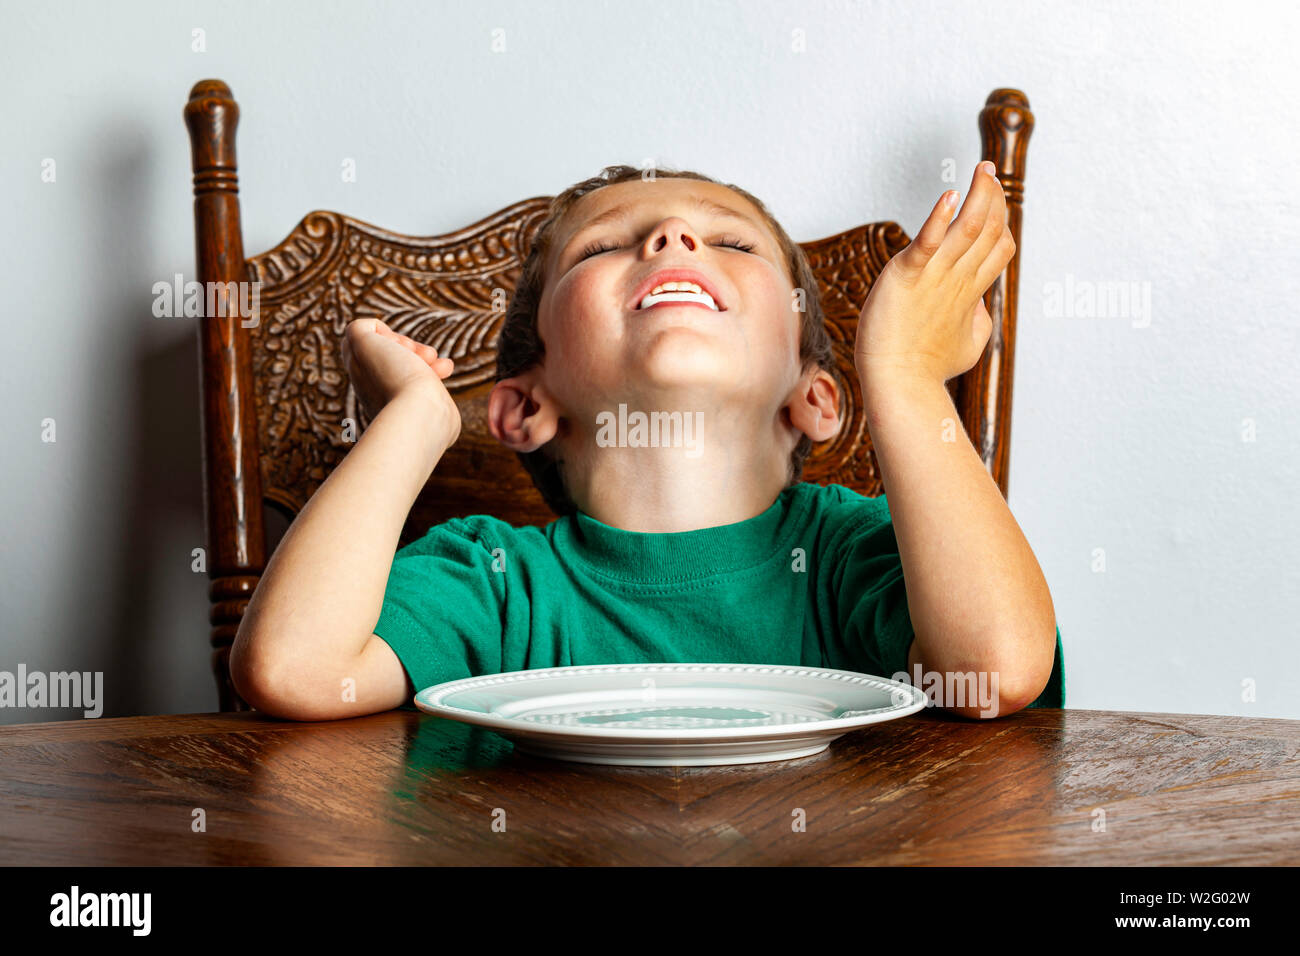 Un jeune garçon assis à une table à la guimauve en un seul près de son visage dans le cadre de l'expérience de guimauve. Banque D'Images